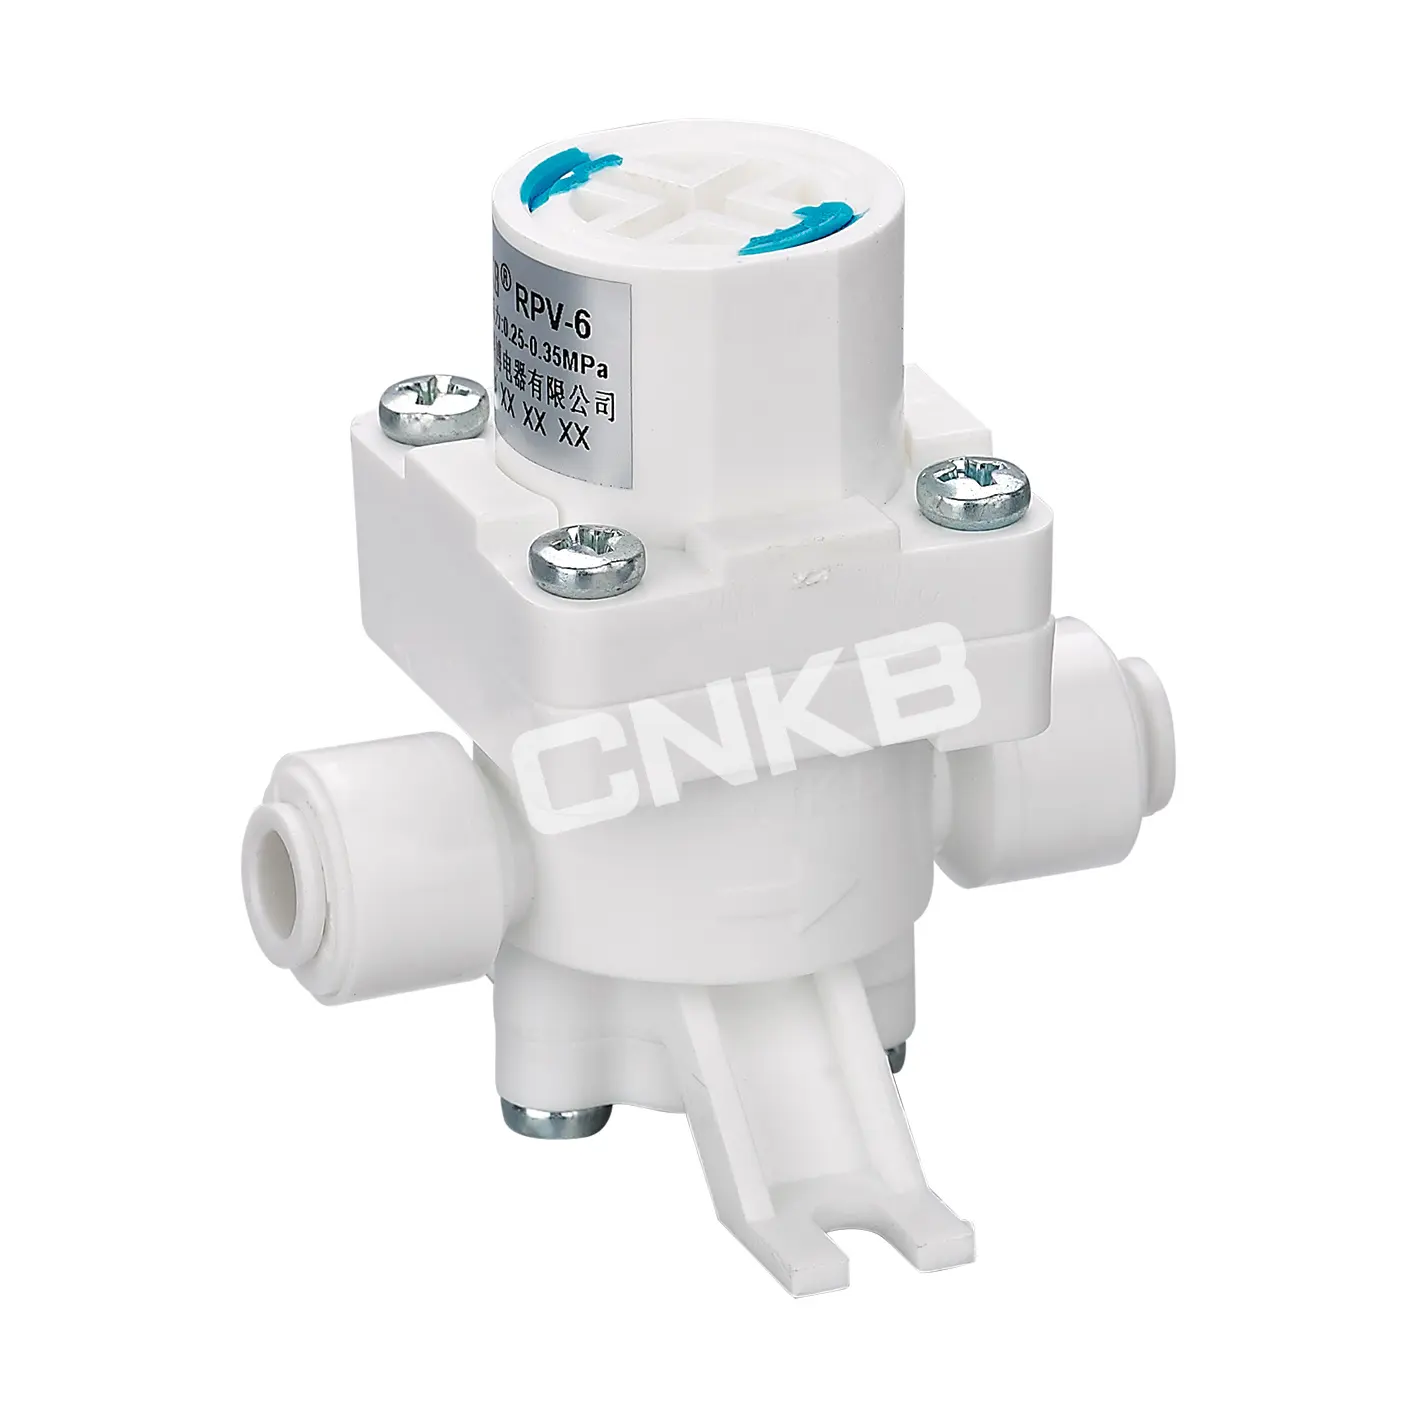 CNKB meist verkauftes Kunststoff-Druck minder ventil für Wasser haushalts geräte